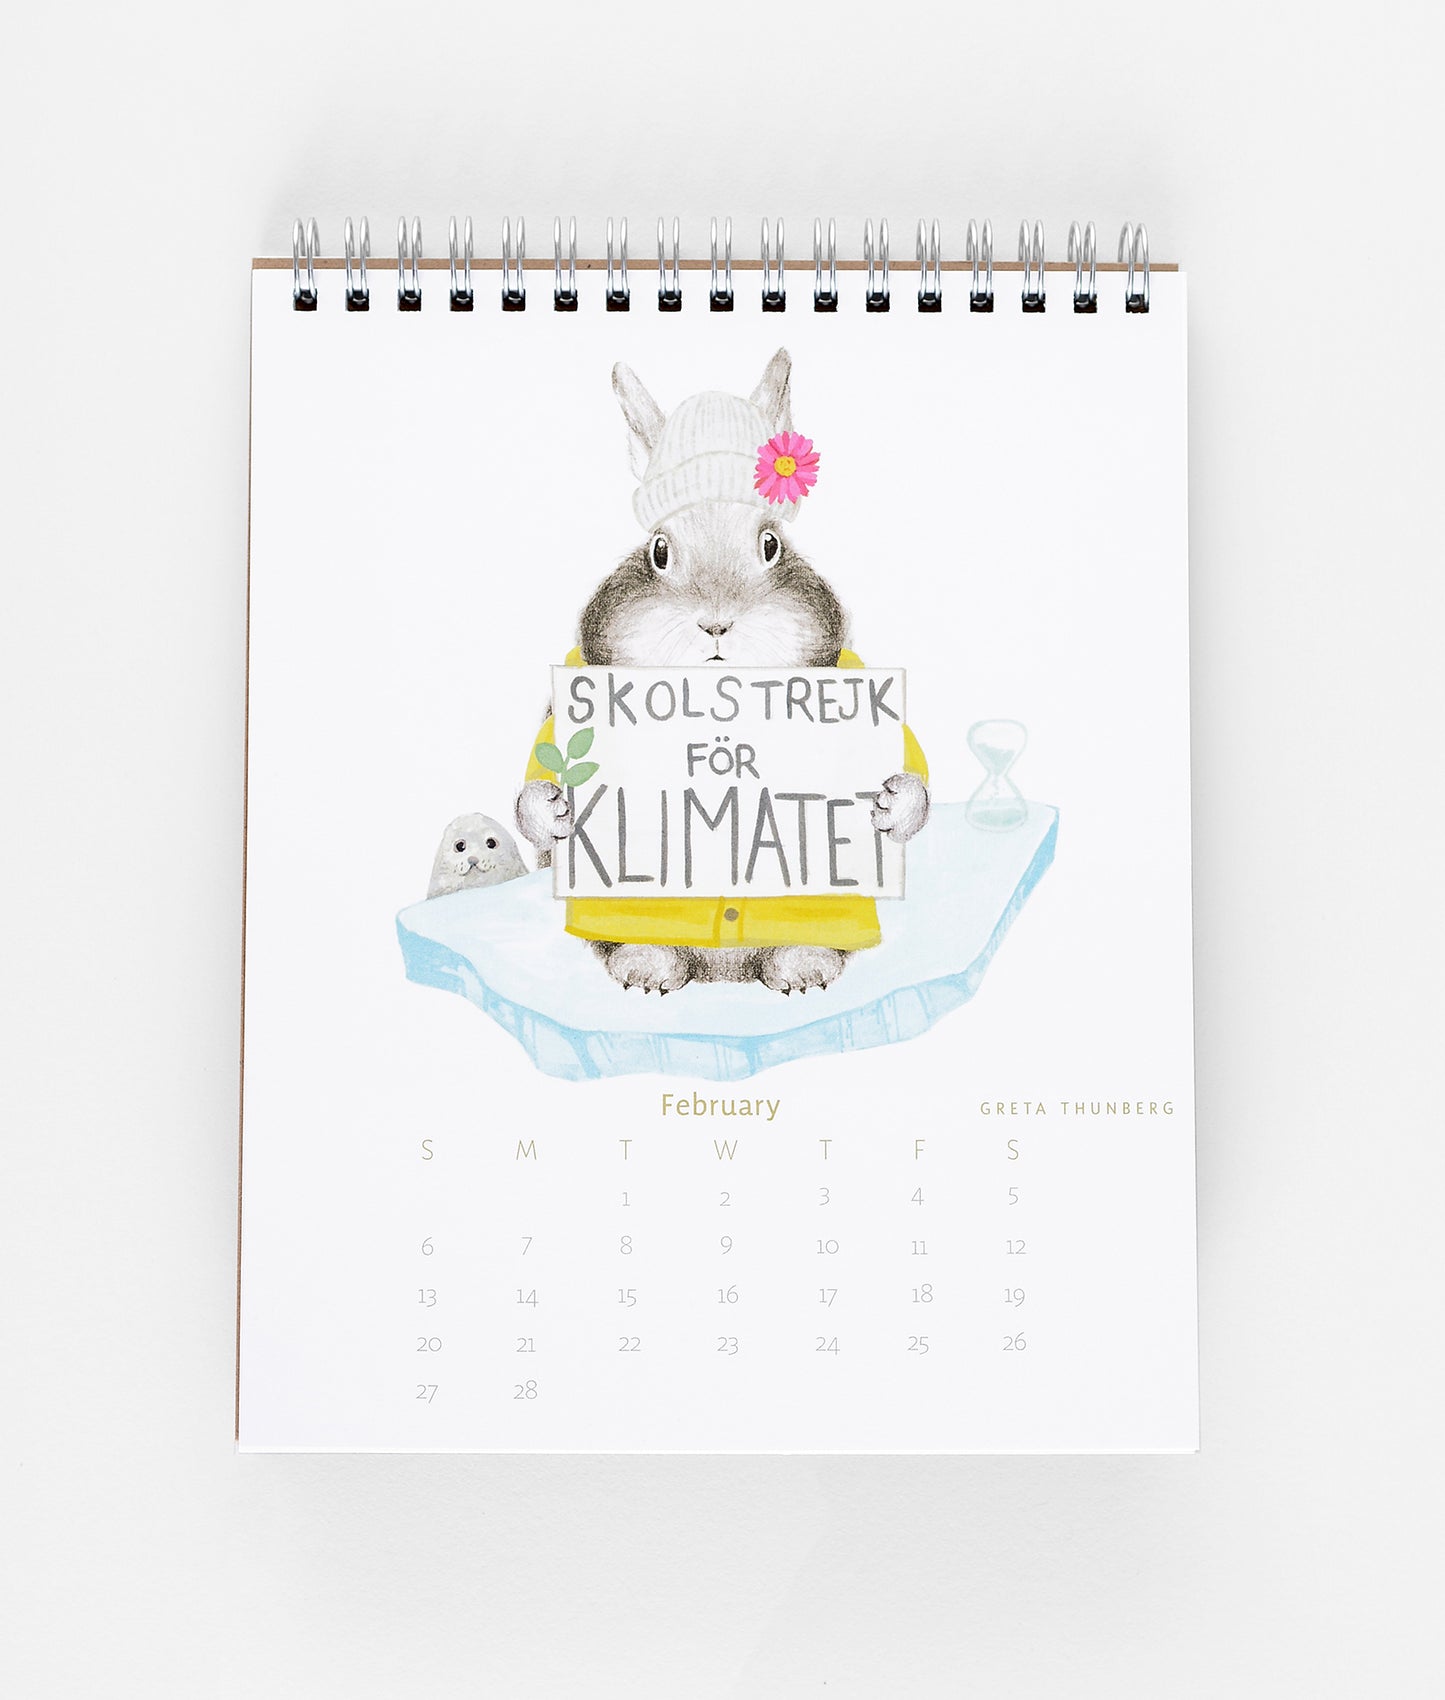 dear-hancock-2022-the-bunny-calendar-historical-hare-o-ines